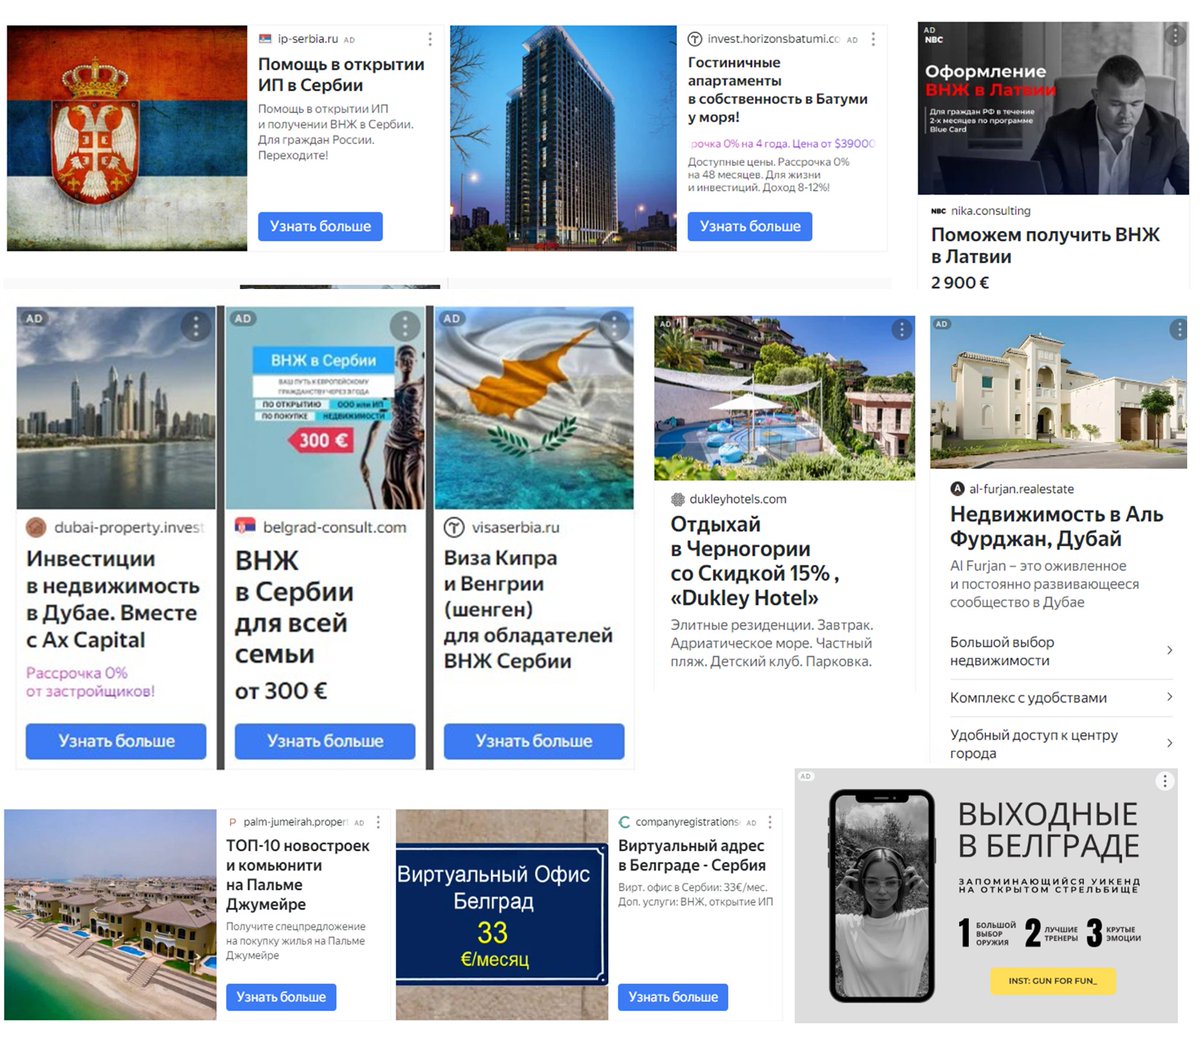 Kada na sajtu zvanične ruske novinske agencije TASS gledate njihove vesti, imate sliku sveta koji propada i Rusije koja cveta, ali zato ako obratite pažnu na reklame i oglase koji okružuju te vesti, uočava se apsolutna dominacija 'kako klisnuti iz Rusije' uz vidno mesto Srbije